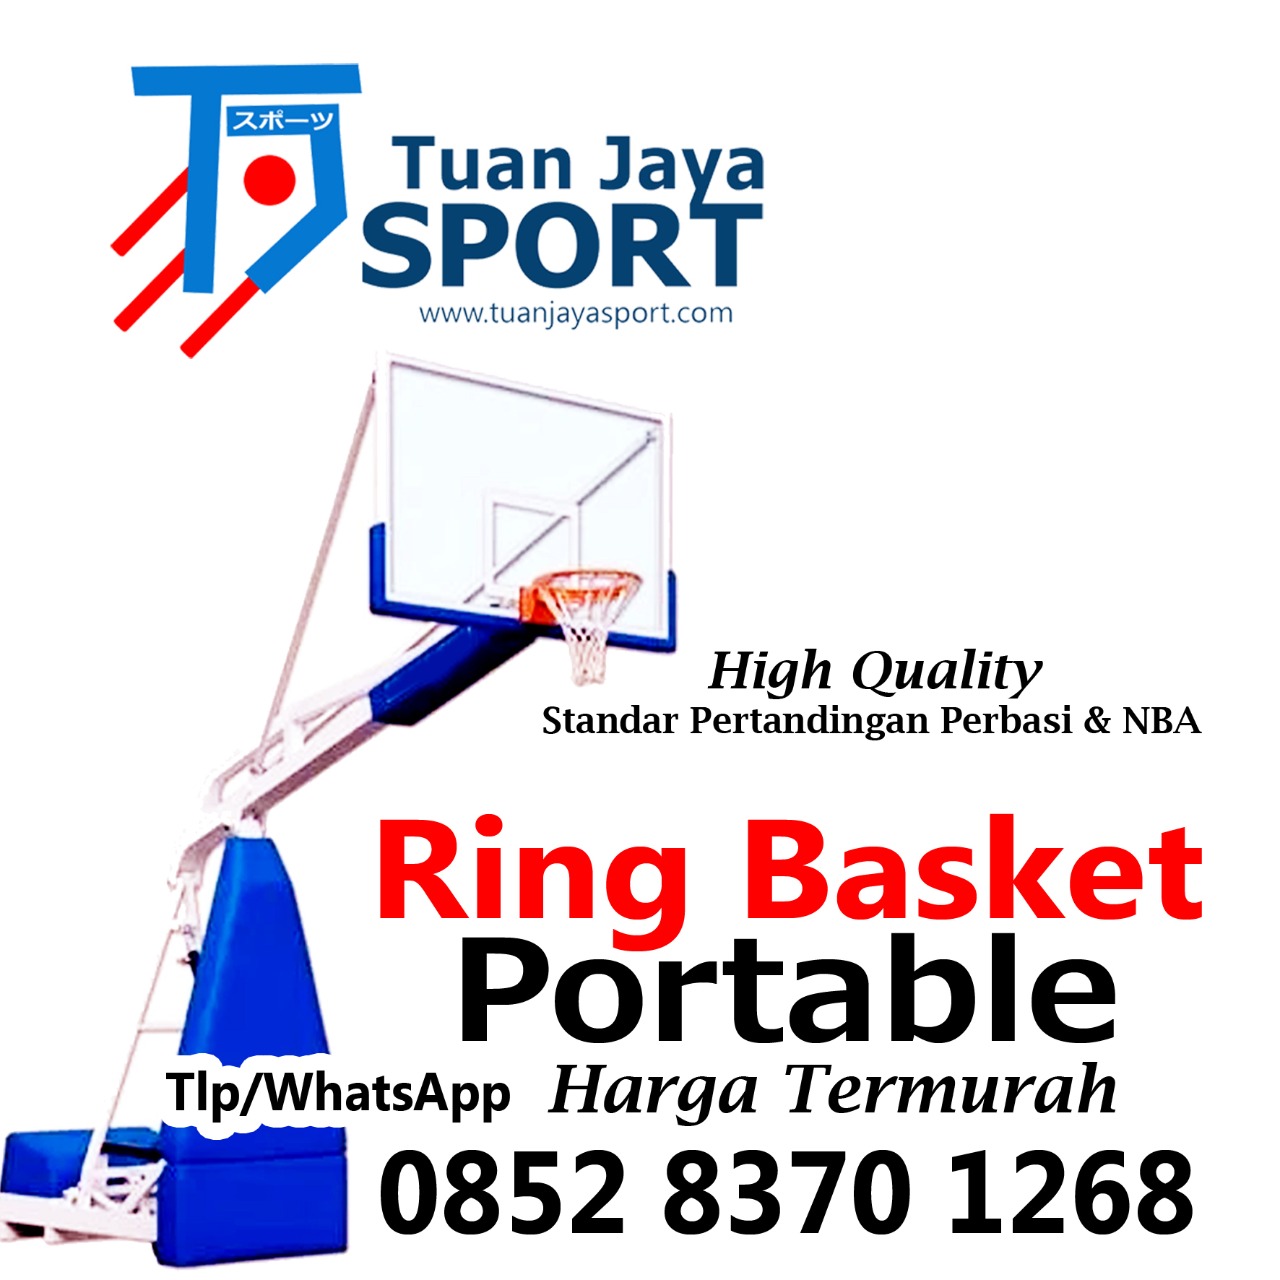 Pemasangan RIng Basket Portable Tuan Jaya Sport | 0812 1208 4448